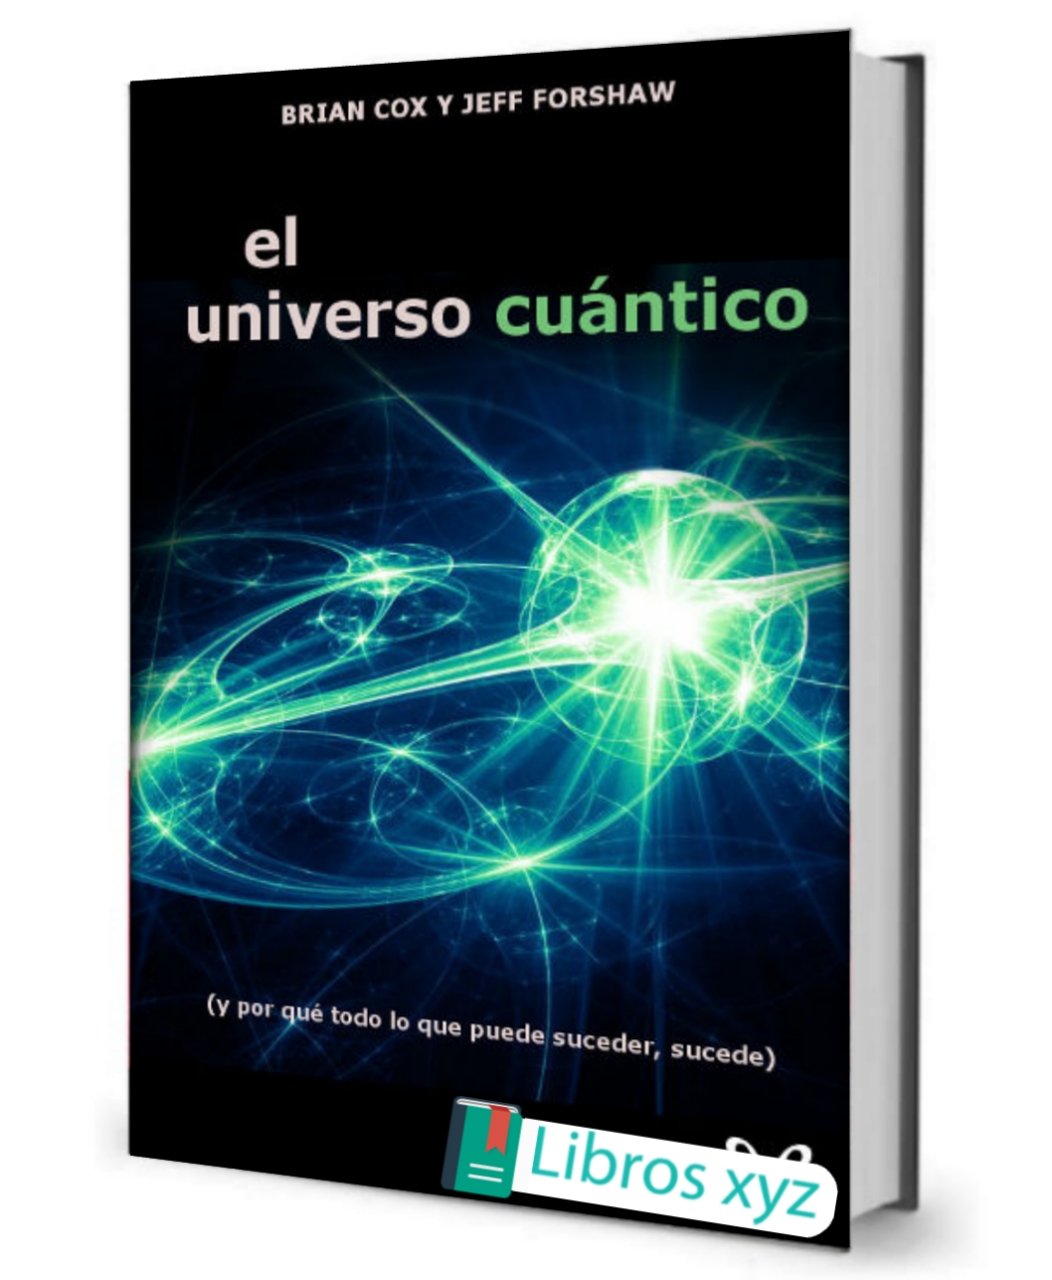 [PDF] El universo cuántico - Brian Cox & Jeff Forshaw descargar gratis